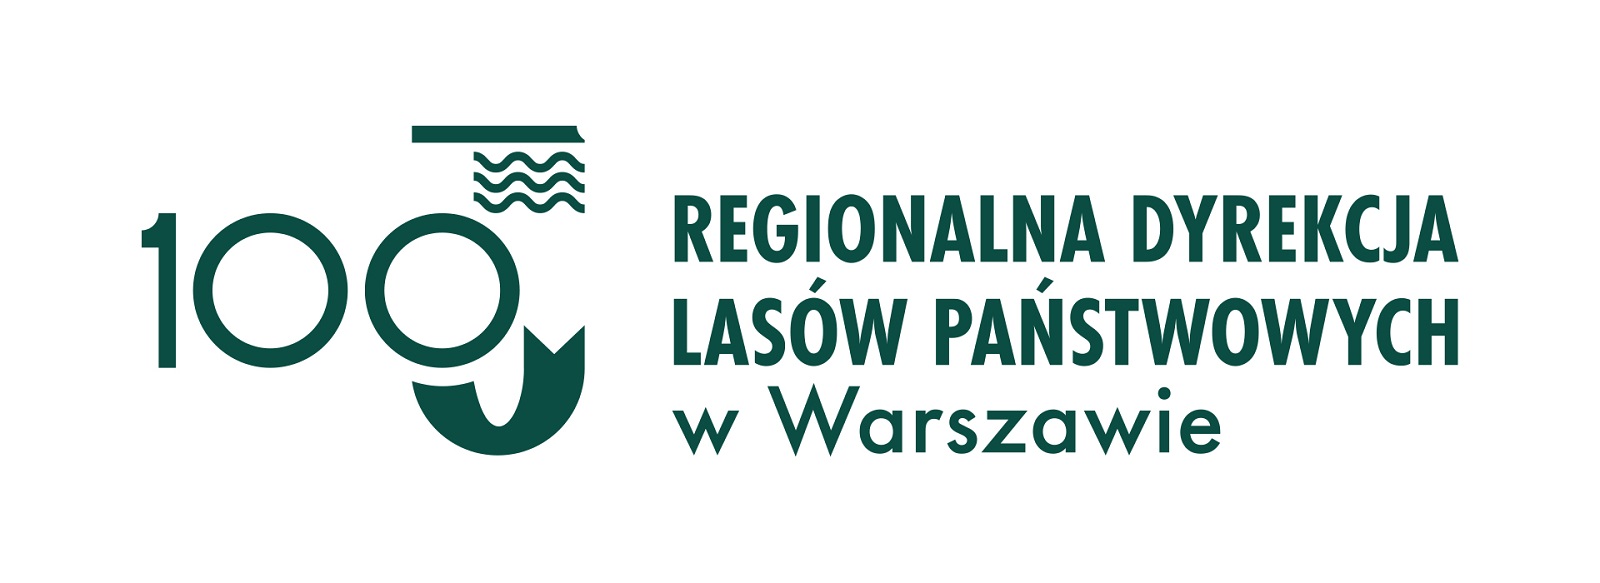 Logo 100-lecia Regionalnej Dyrekcji Lasów Państwowych w Warszawie